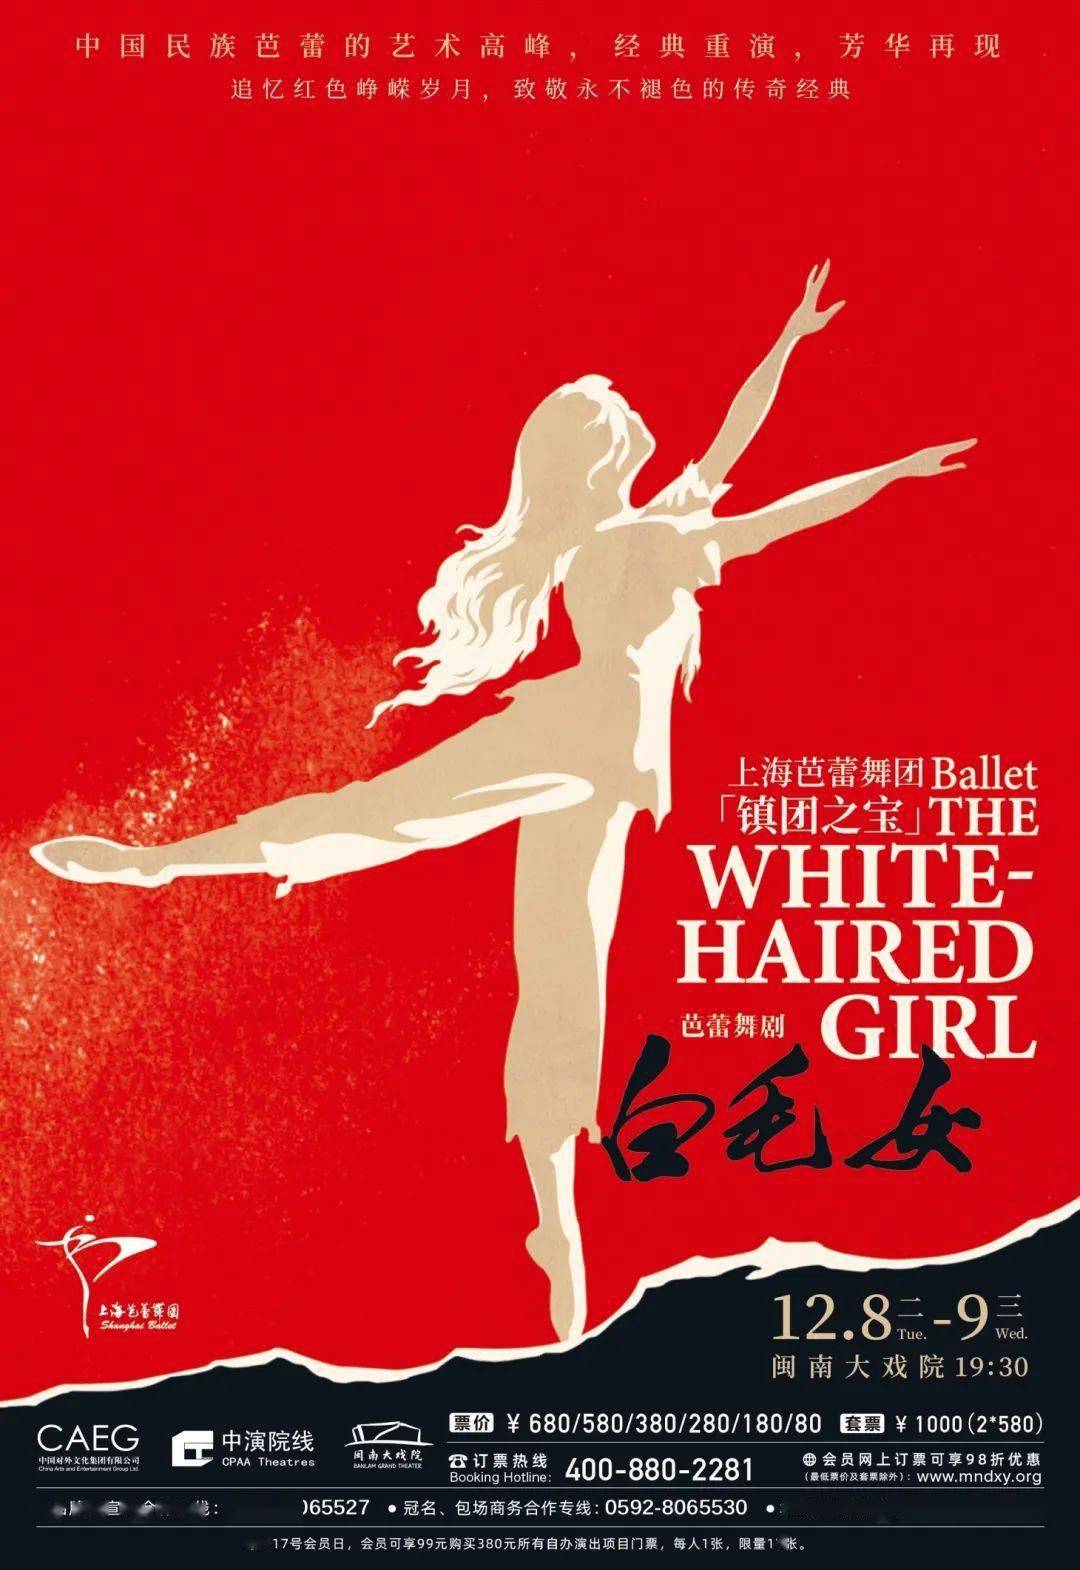 红头绳,北风吹,当革命故事遇上芭蕾,感受上海芭蕾舞团 镇团之宝 白毛女 足尖上的经典